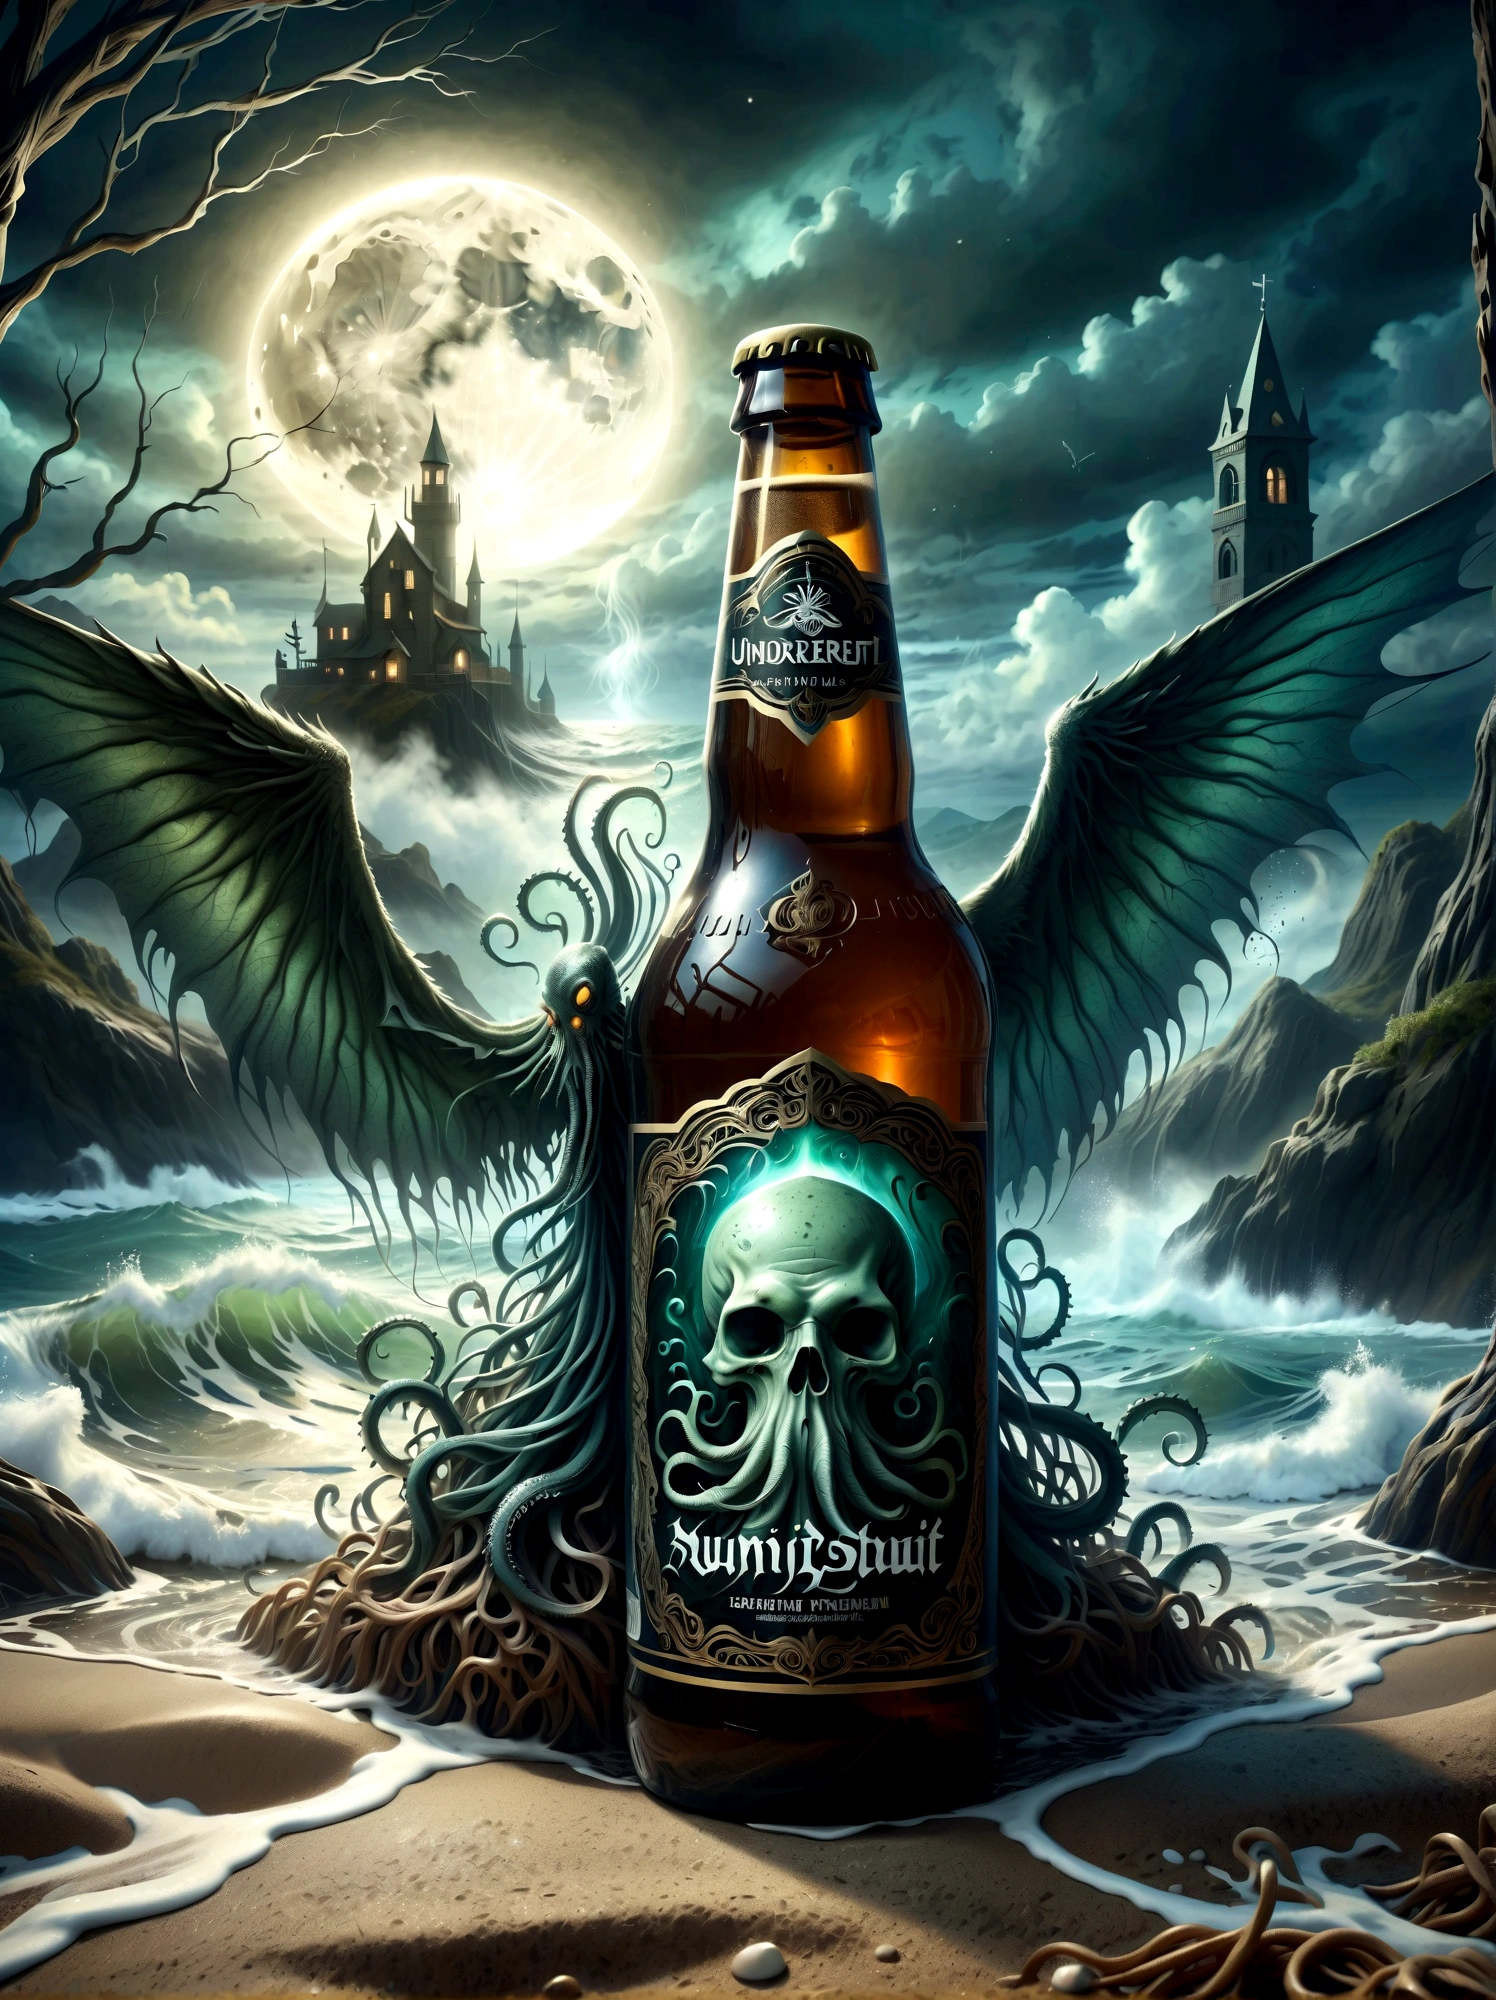 Visualisez ceci: un ancien faiblement éclairé, créature colossale, rappelle la créature de Lovecraft avec des tentacules et des ailes - descendant de façon menaçante à travers les eaux brumeuses. Au premier plan, une bière artisanale affichant des détails complexes sur la bouteille, la bière mousseuse déborde presque de son bord, avec la toile de fond étrange se reflétant subtilement sur la surface du verre. L&#39;atmosphère est épaisse avec un courant d&#39;horreur subtil qui vous attire de manière séduisante dans ce scénario emprunté au monde étrange de Lovecraft mais réinventé avec des éléments modernes..